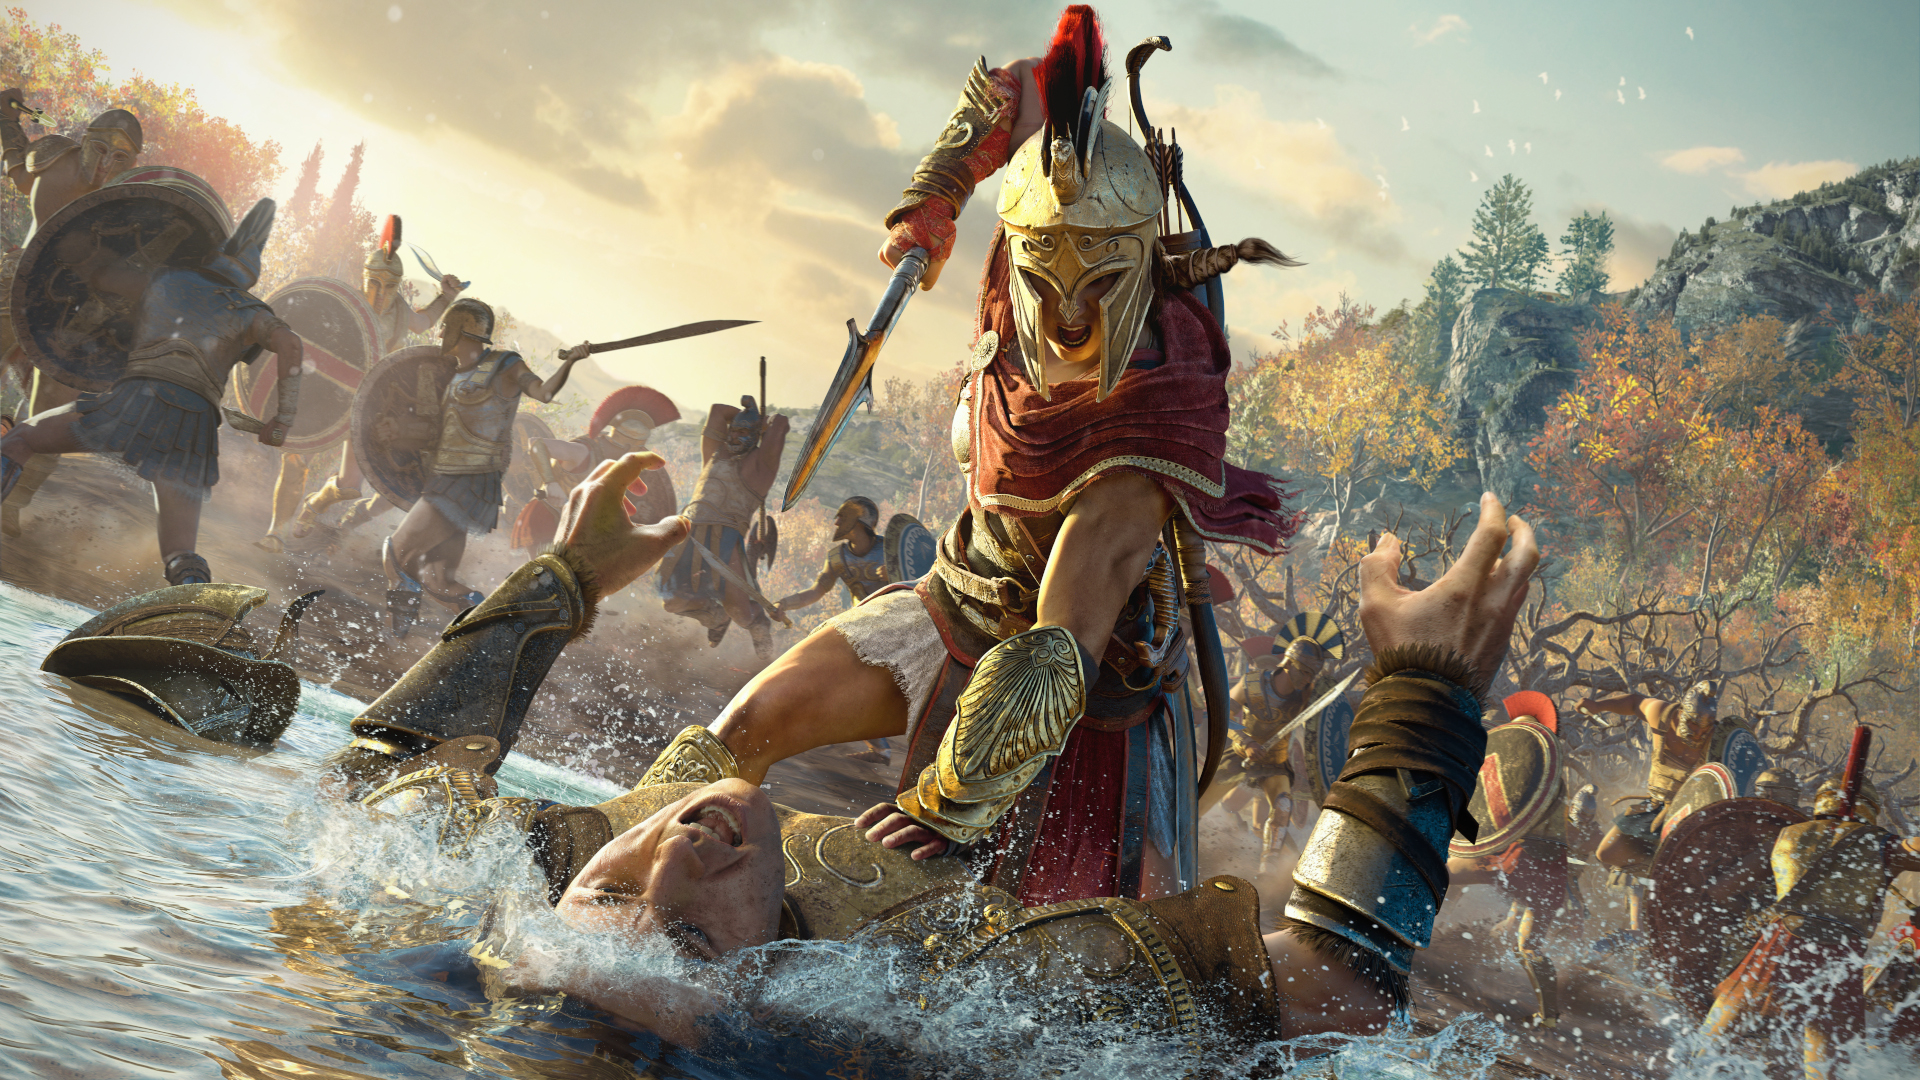  Кассандра сражается со Спартанцем в Assassin's Creed Odyssey